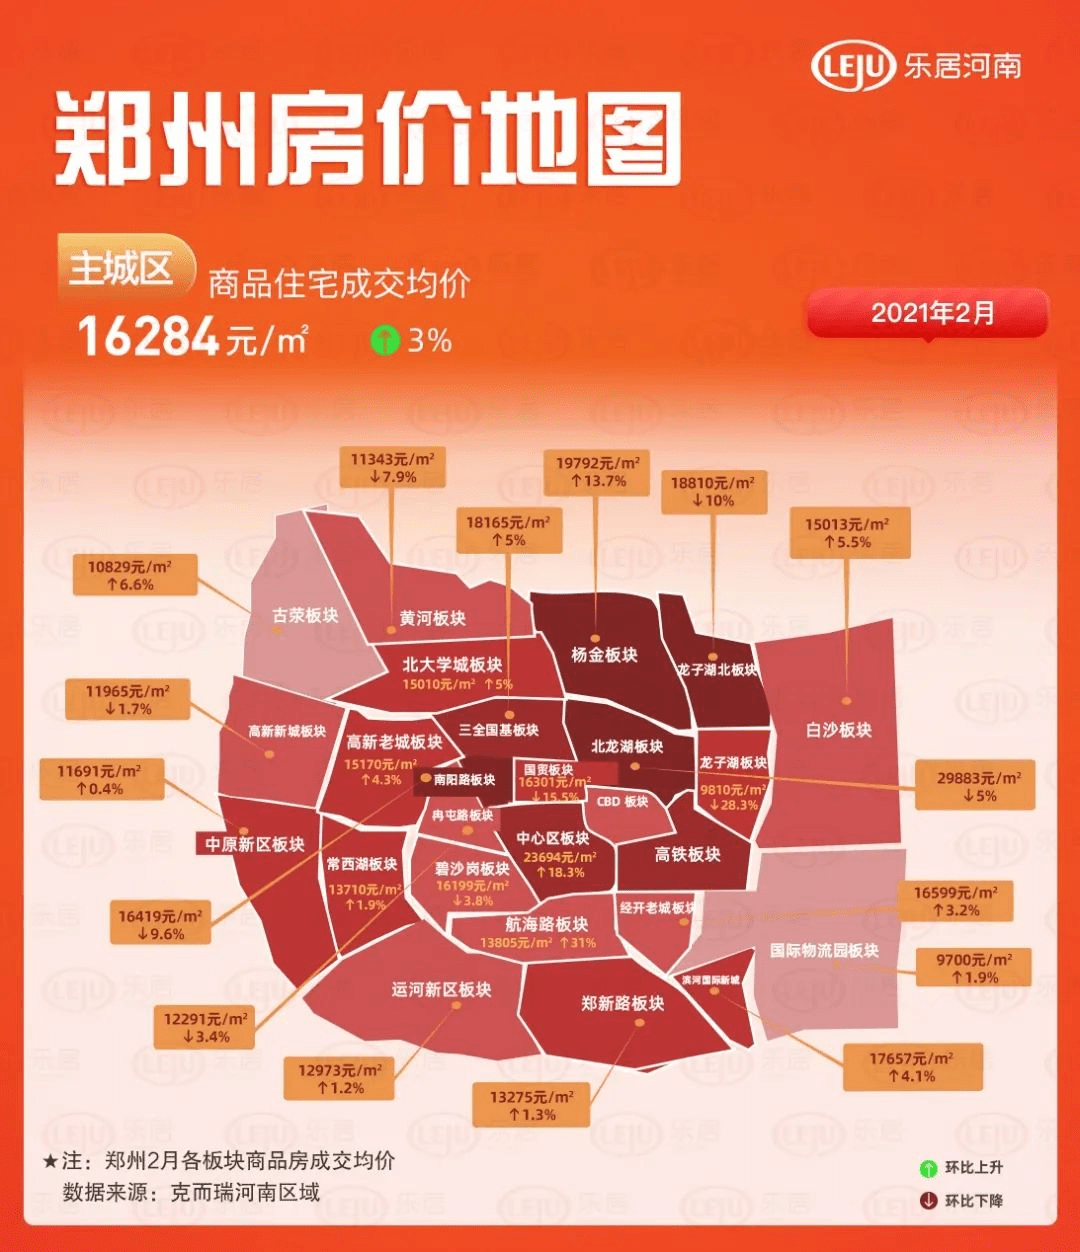 郑州最新房价地图曝光!均价首次破1万6,哪个区涨幅最大?